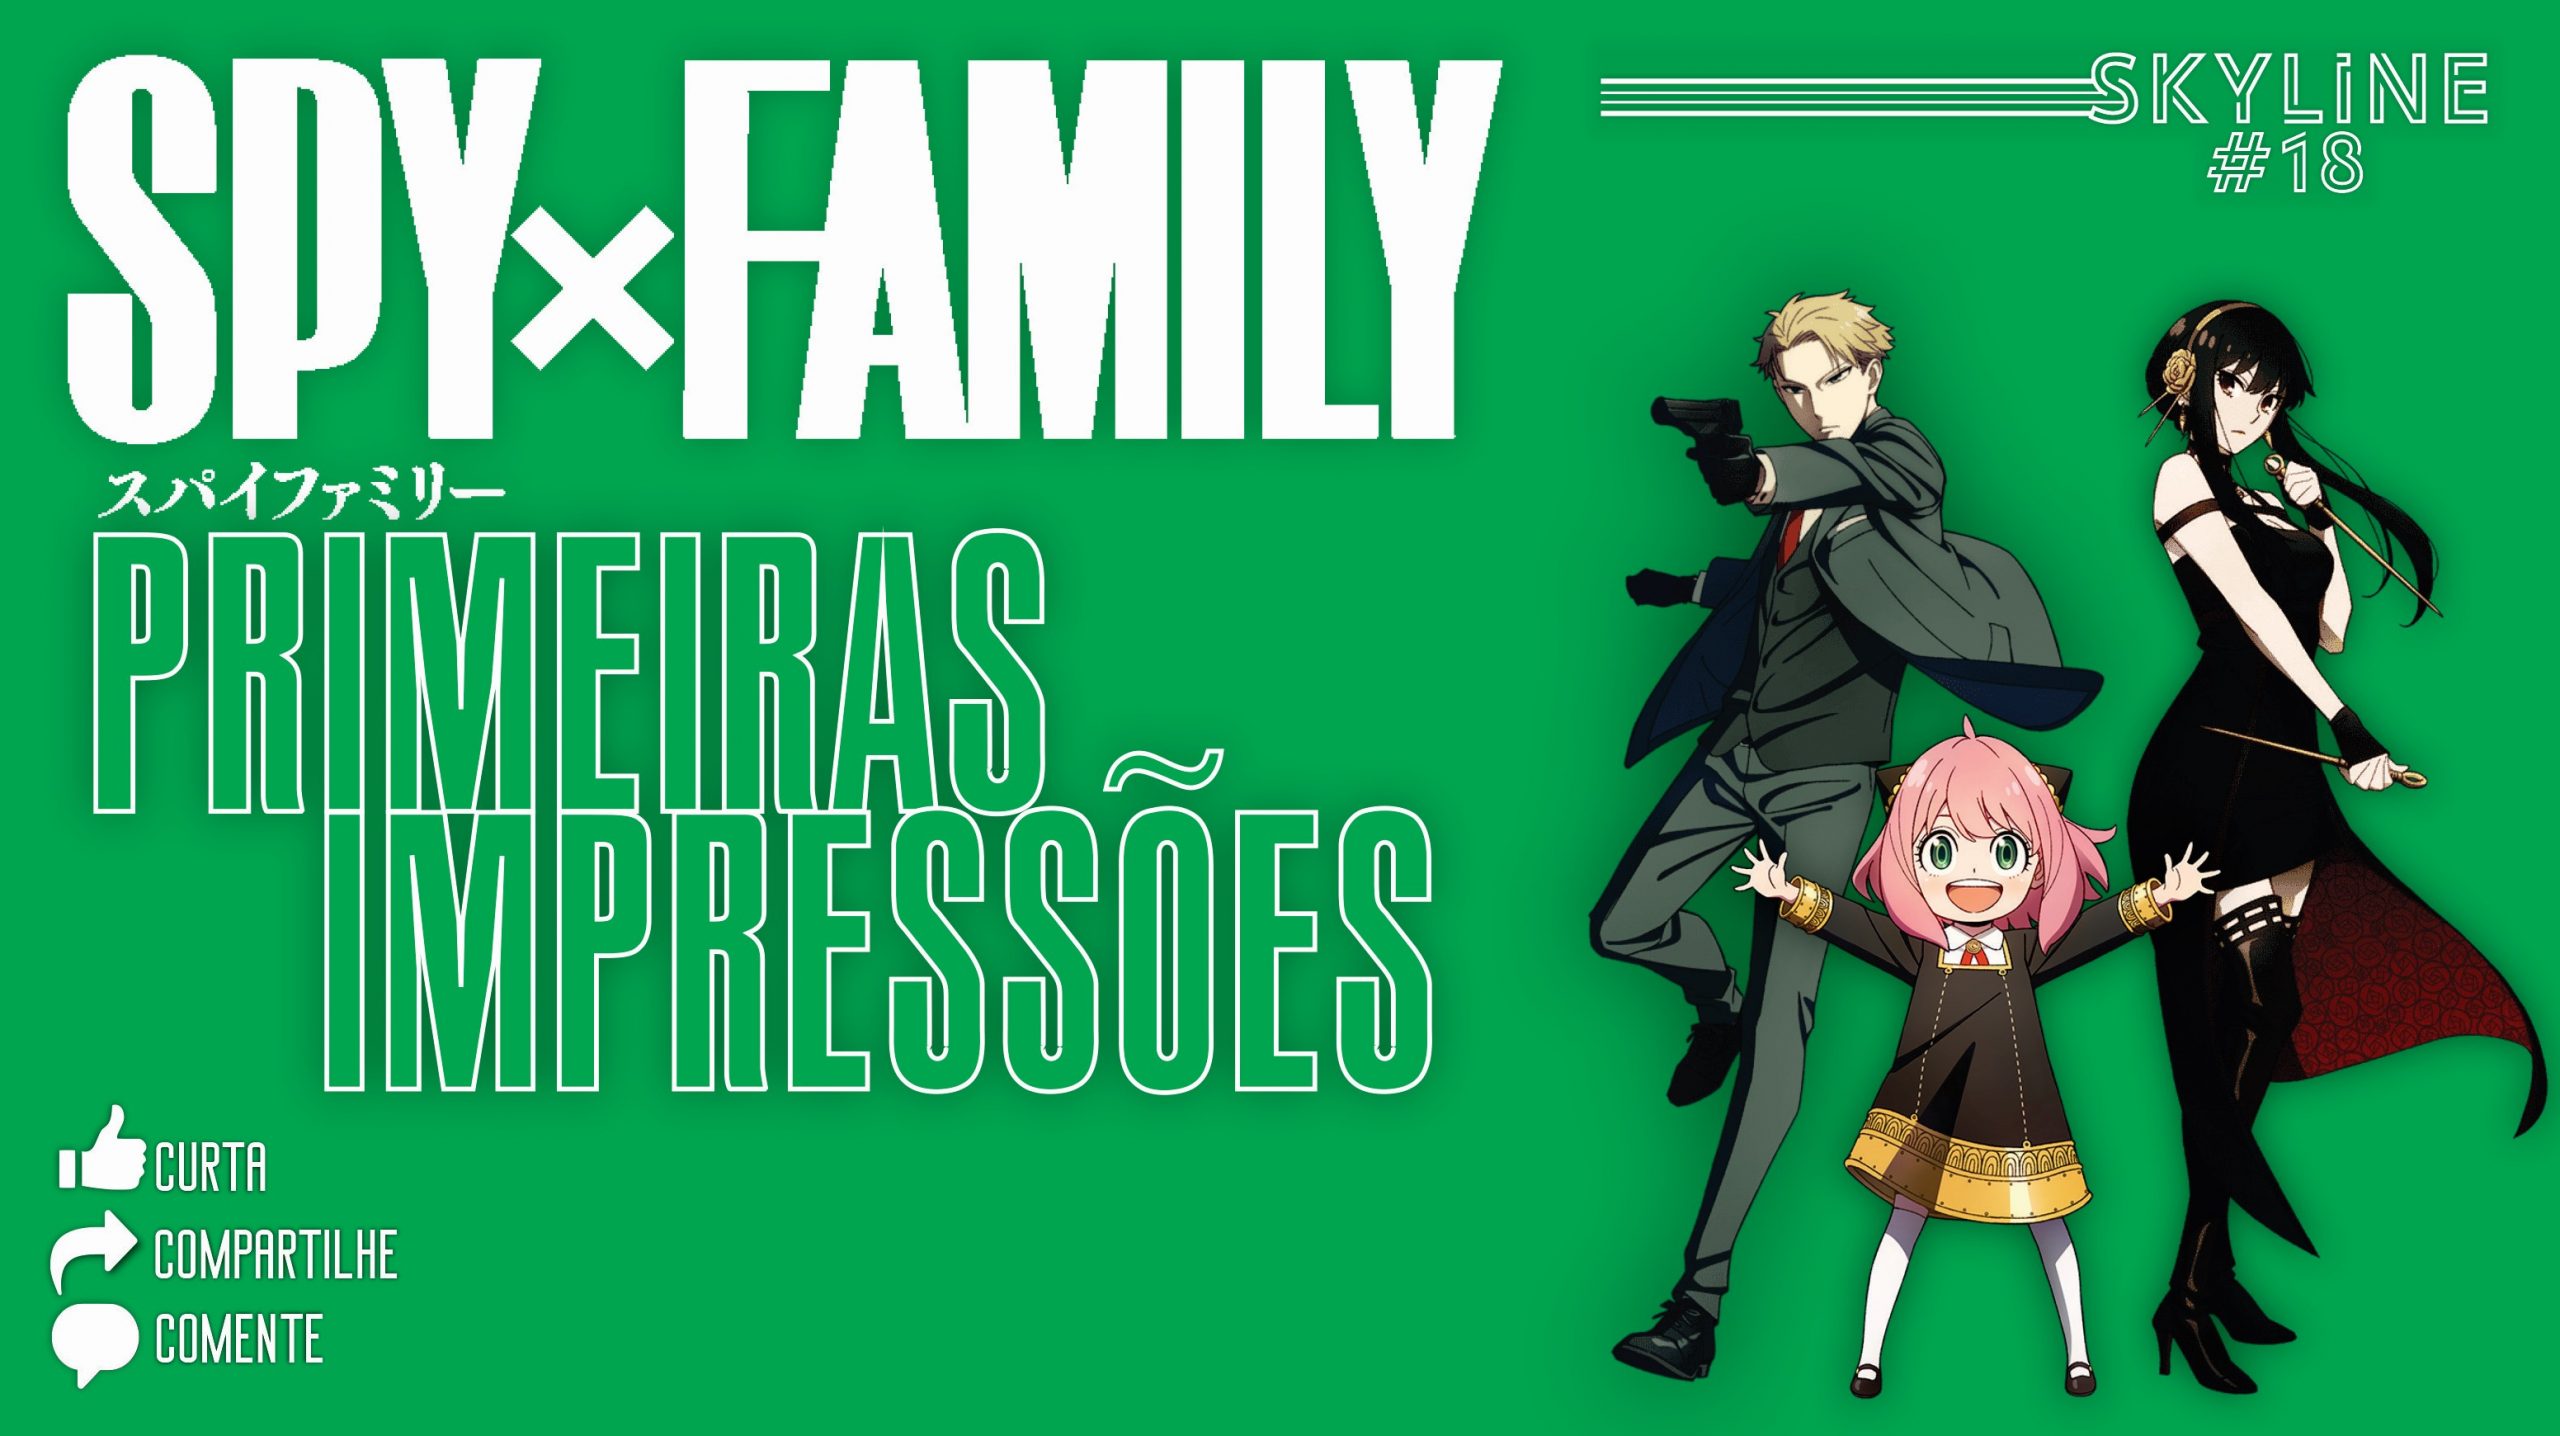 SPY x FAMILY - Parte 2 do anime estreia em outubro - AnimeNew